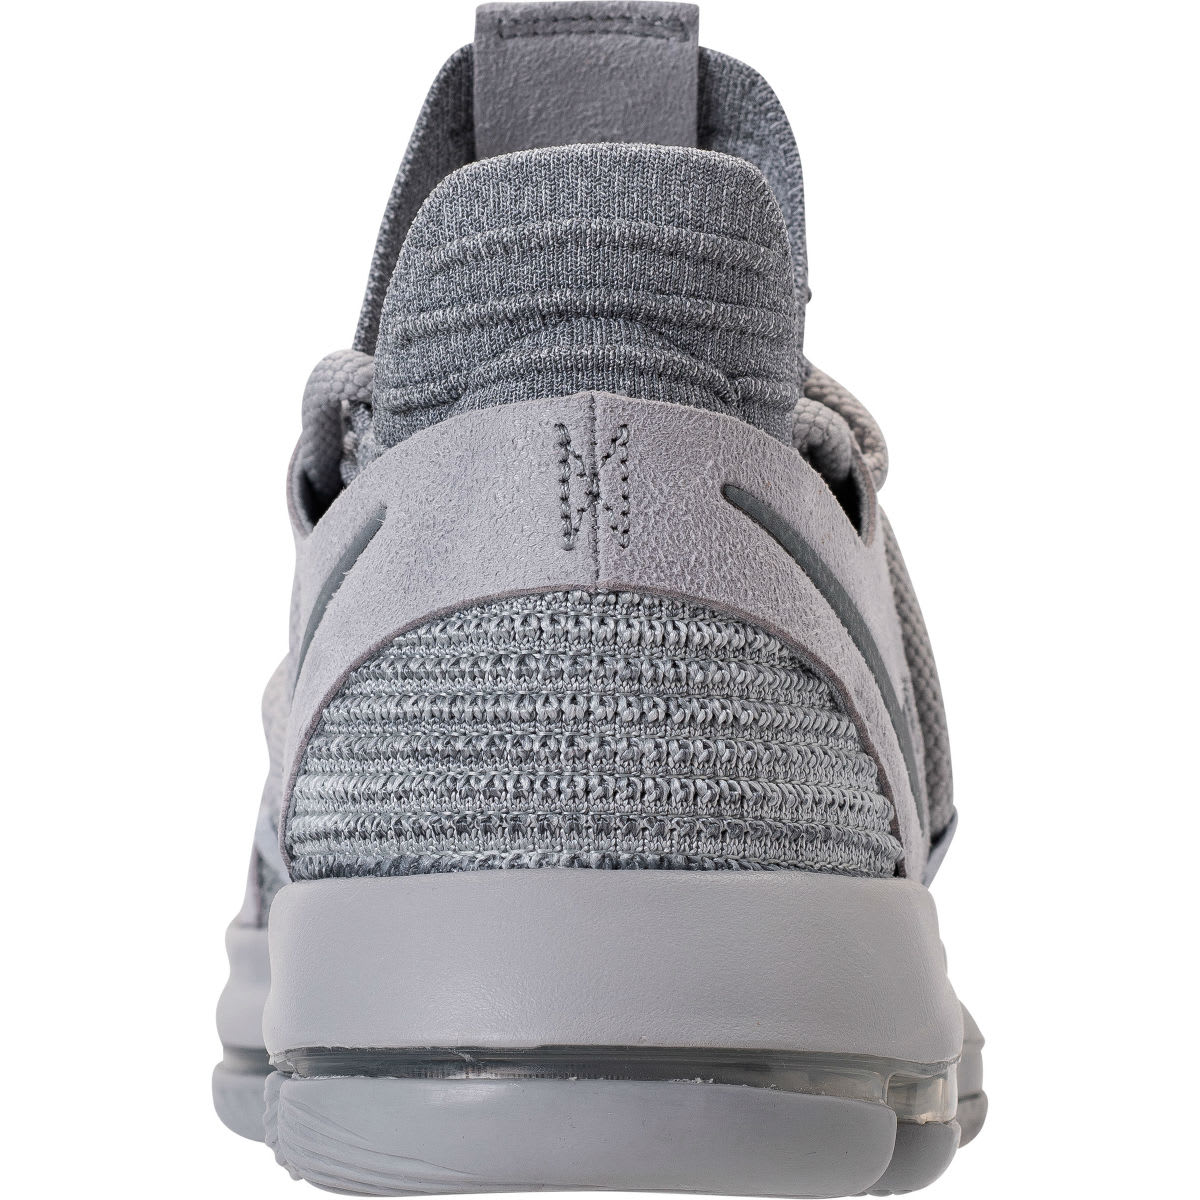 Nike KD 10 Wolf Grery Cool Grey Release Date Heel